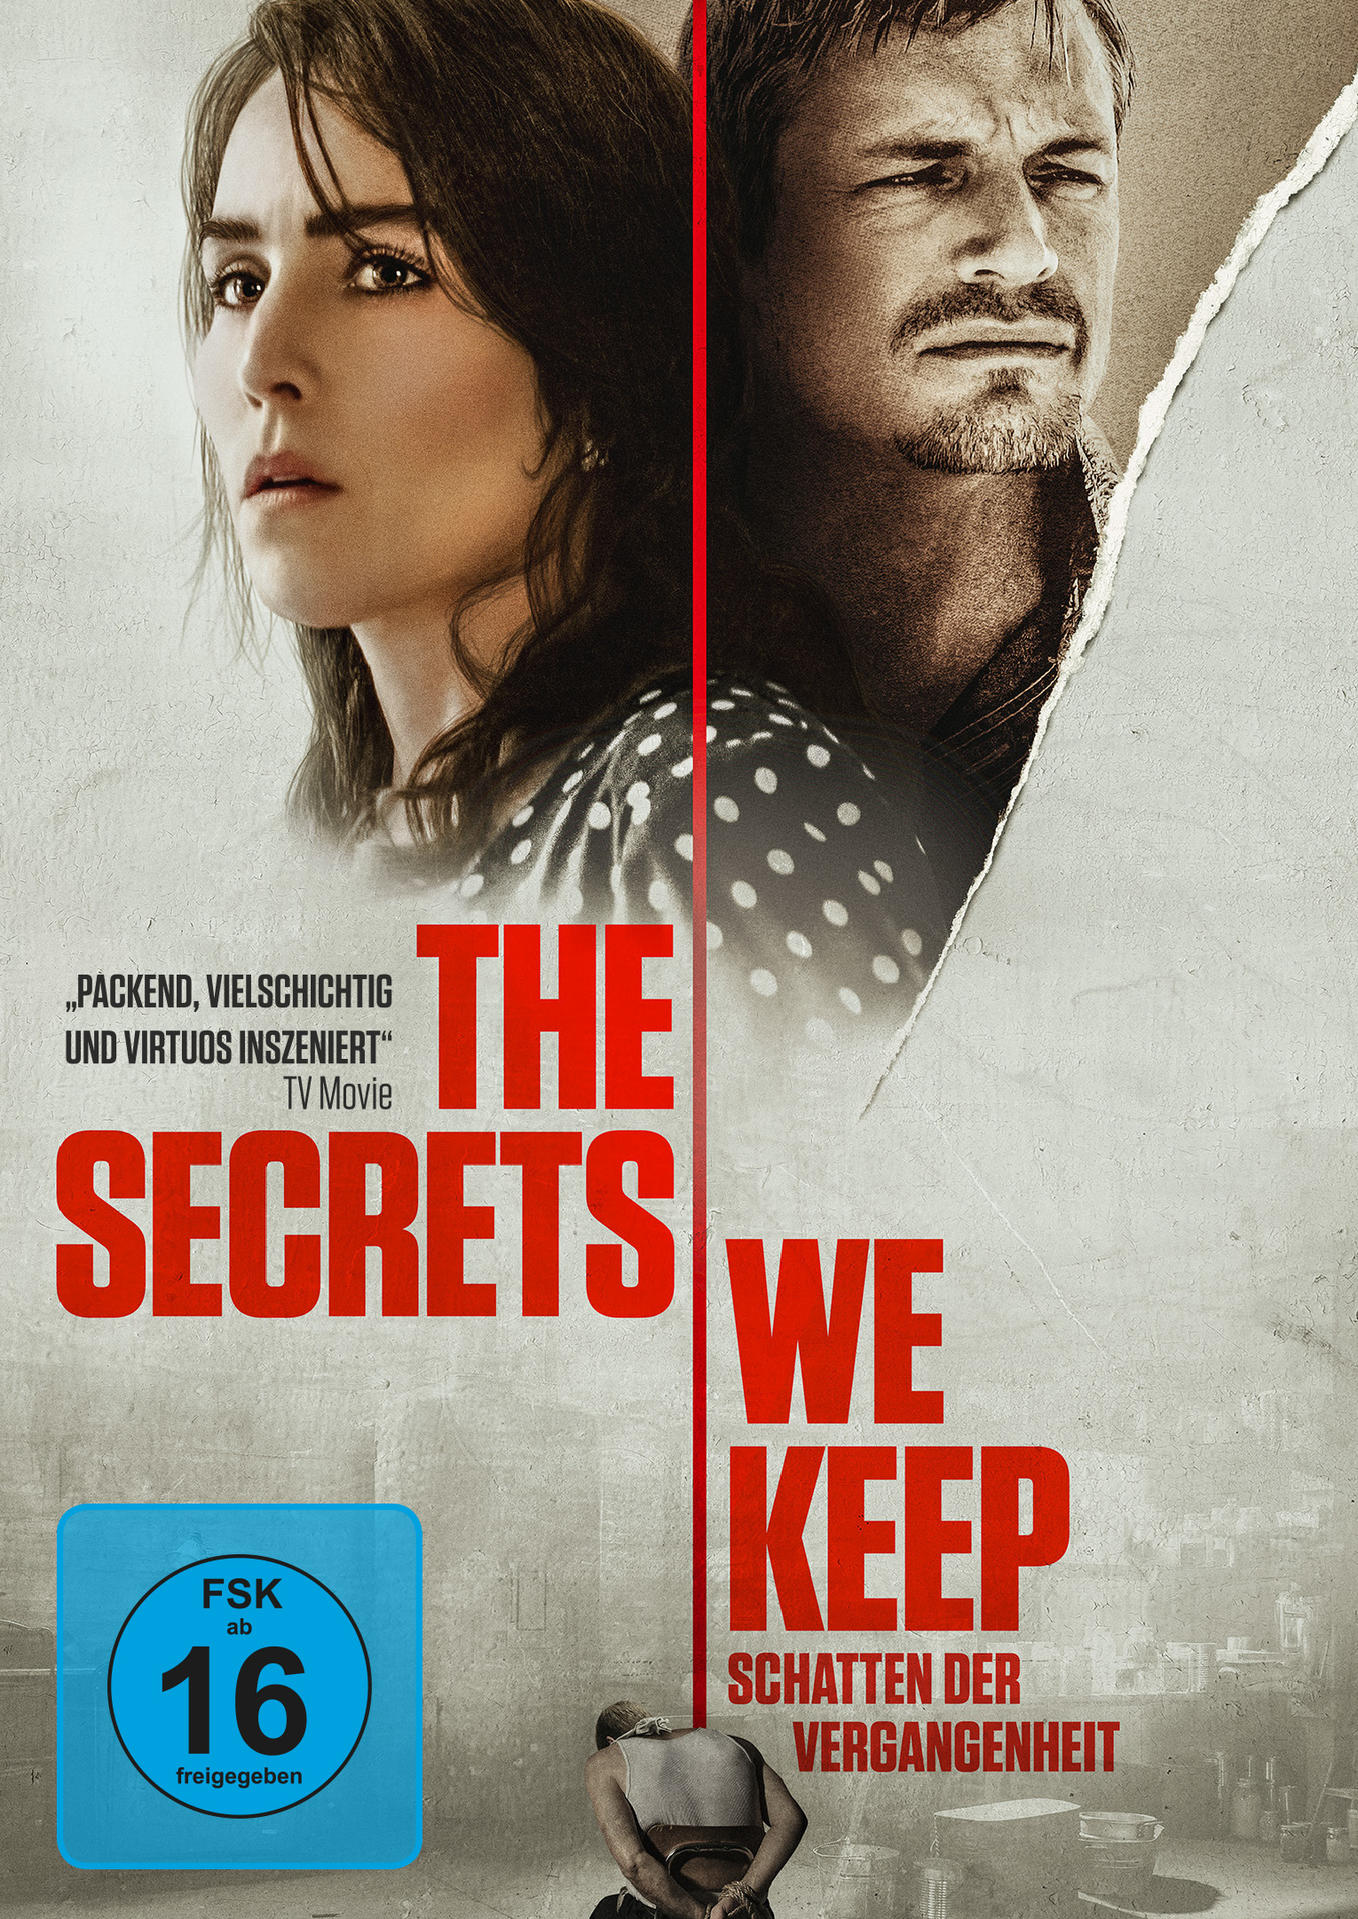 Secrets Schatten Vergangenheit der - Keep We DVD The